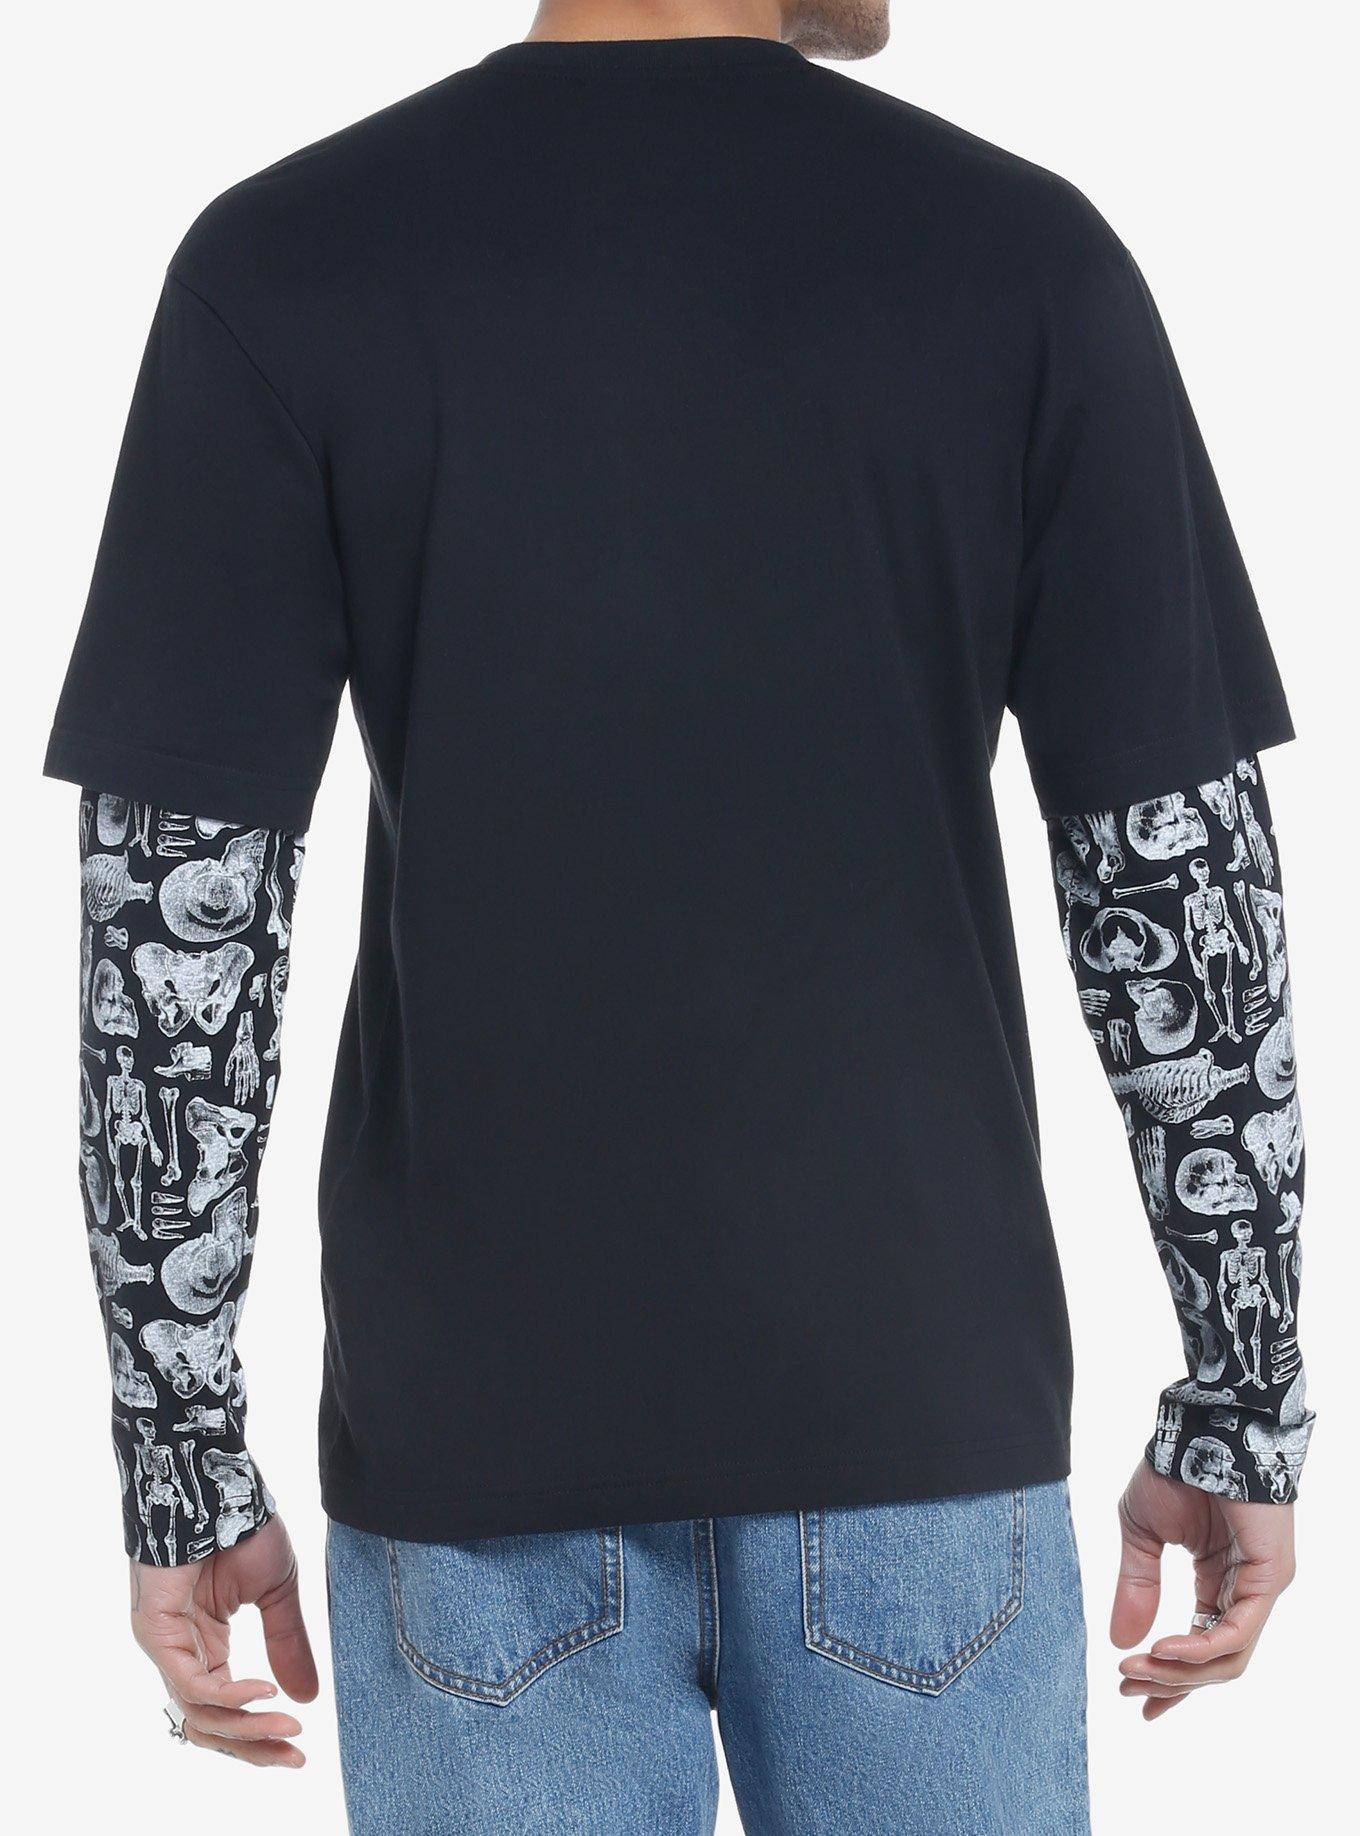 Skeleton Anatomy Twofer Long-Sleeve T-Shirt, BLACK, alternate